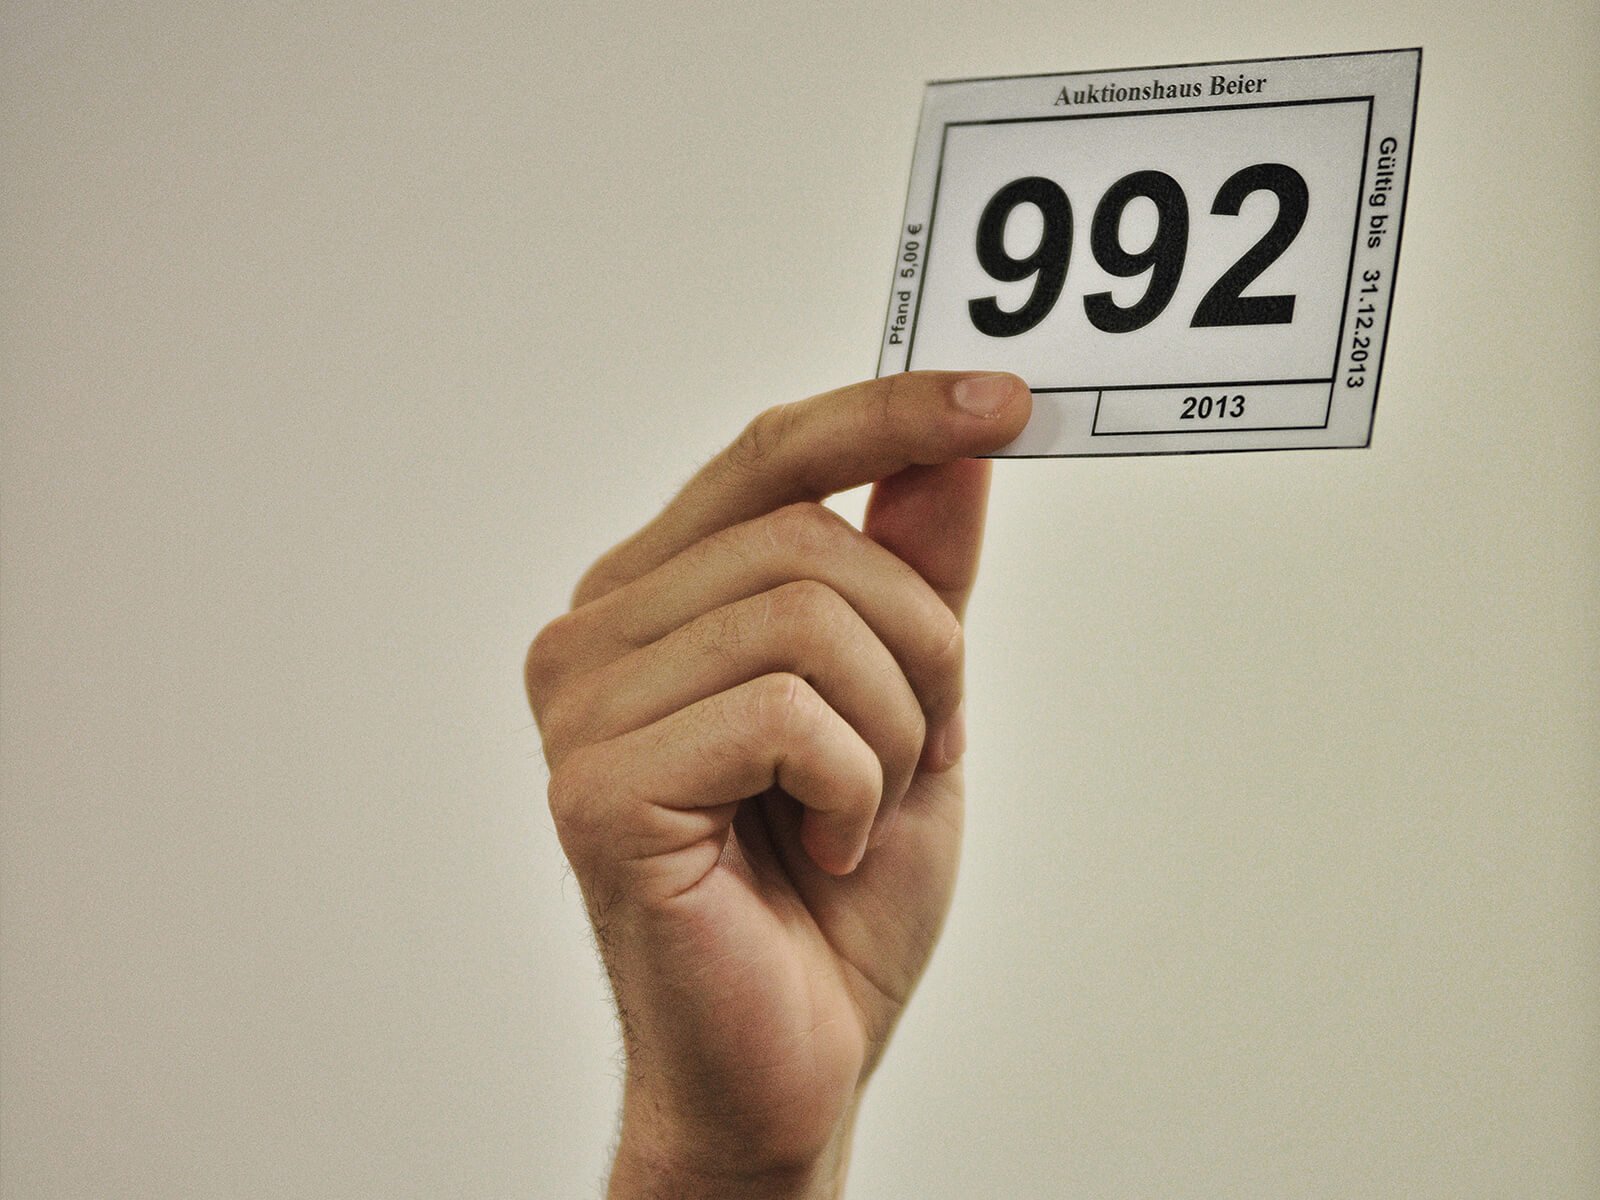 Eine Hand hält einen Nummerzettel hoch, der bei der Versteigerung der nicht abgeholten Fundsachen des BVG Fundbüros genutzt wird, um etwas zu ersteigern